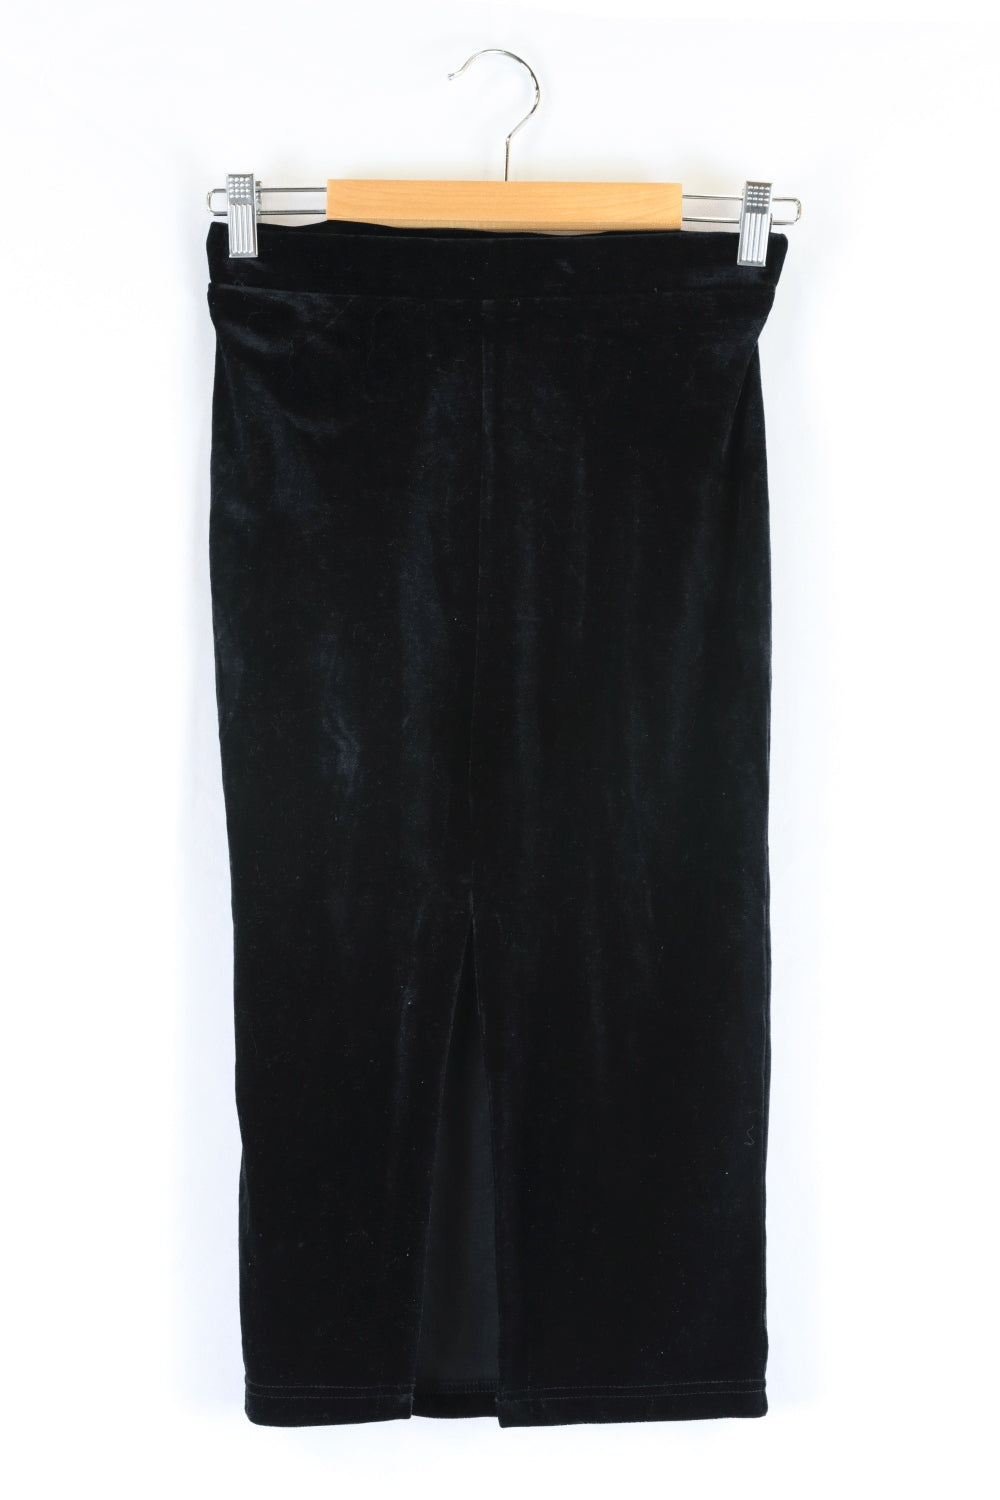 Bardot Velvet Black Skirt 10